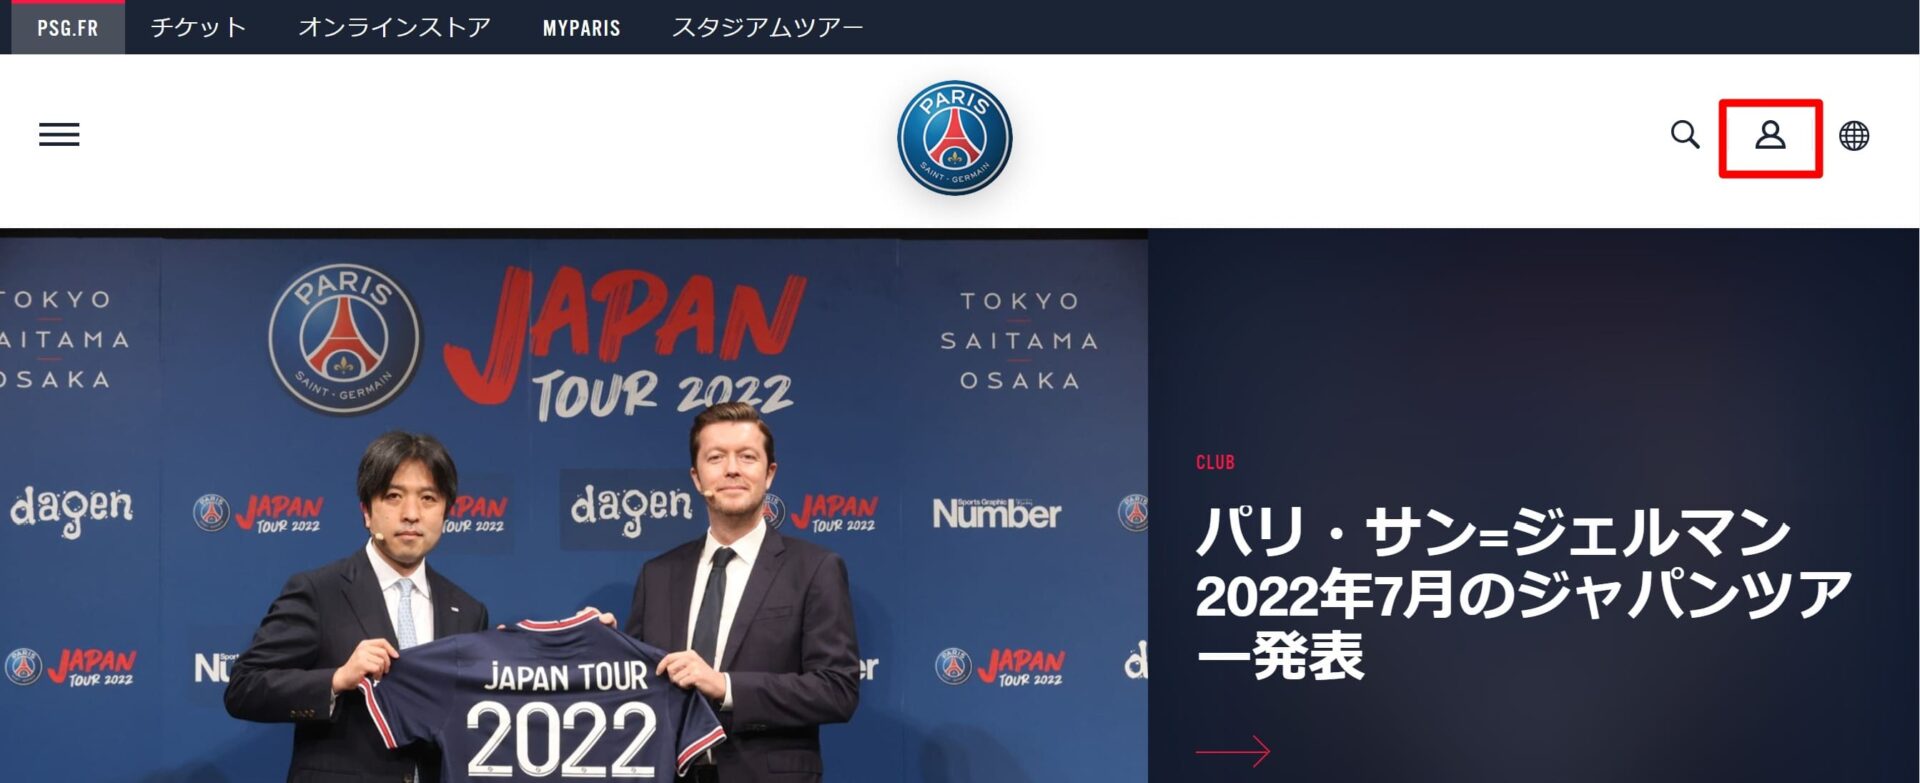 PSG公式の日本語サイトのトップページ (1)